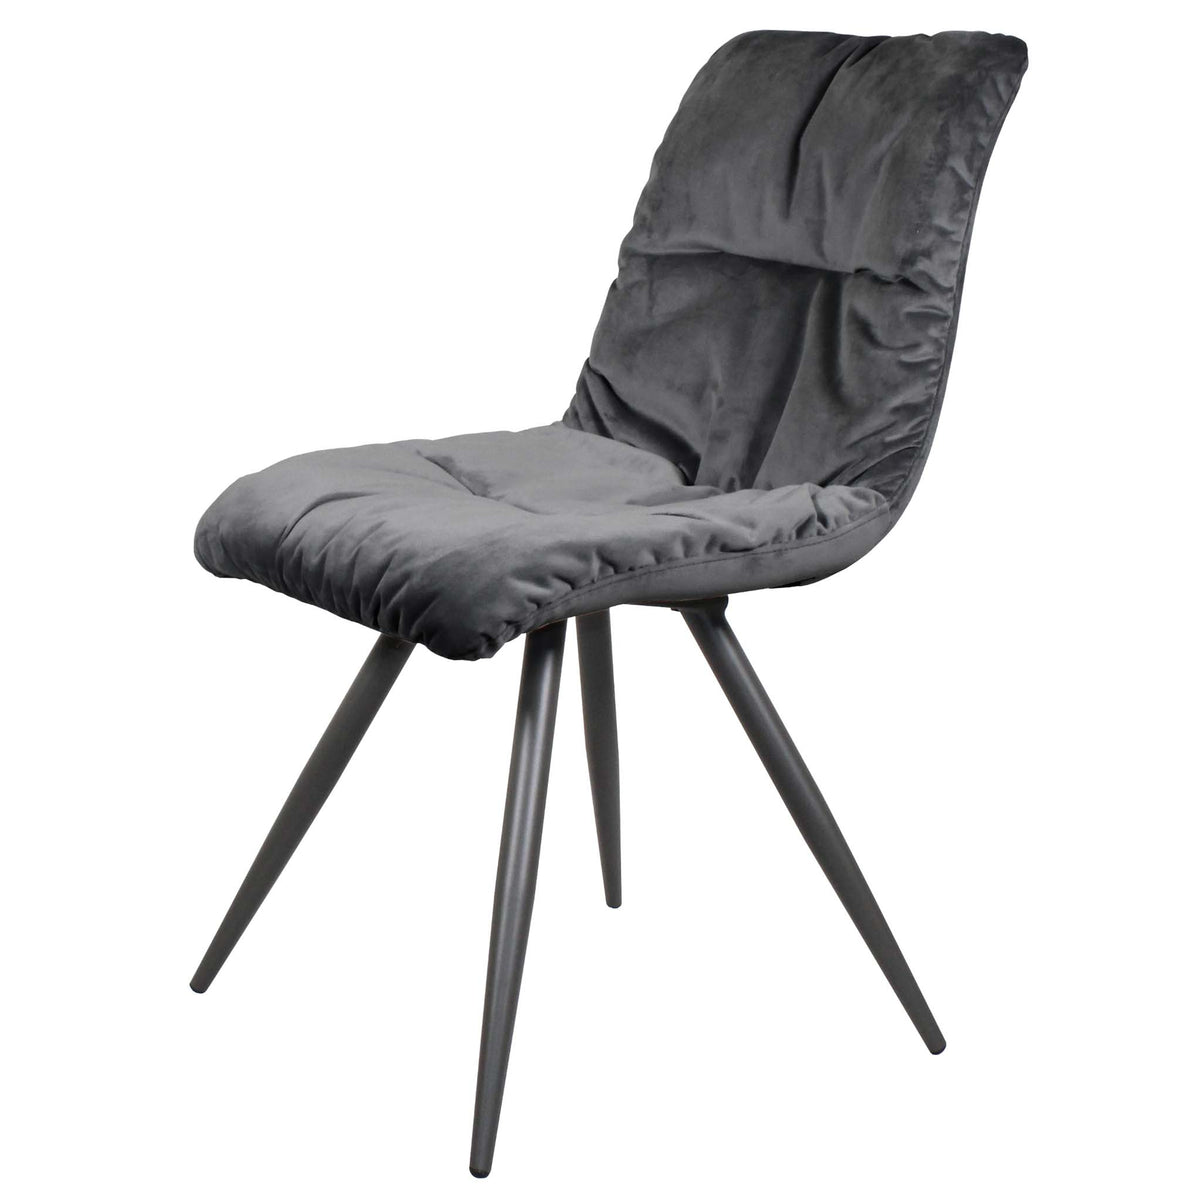 6 Addison Dark Grey Chairs